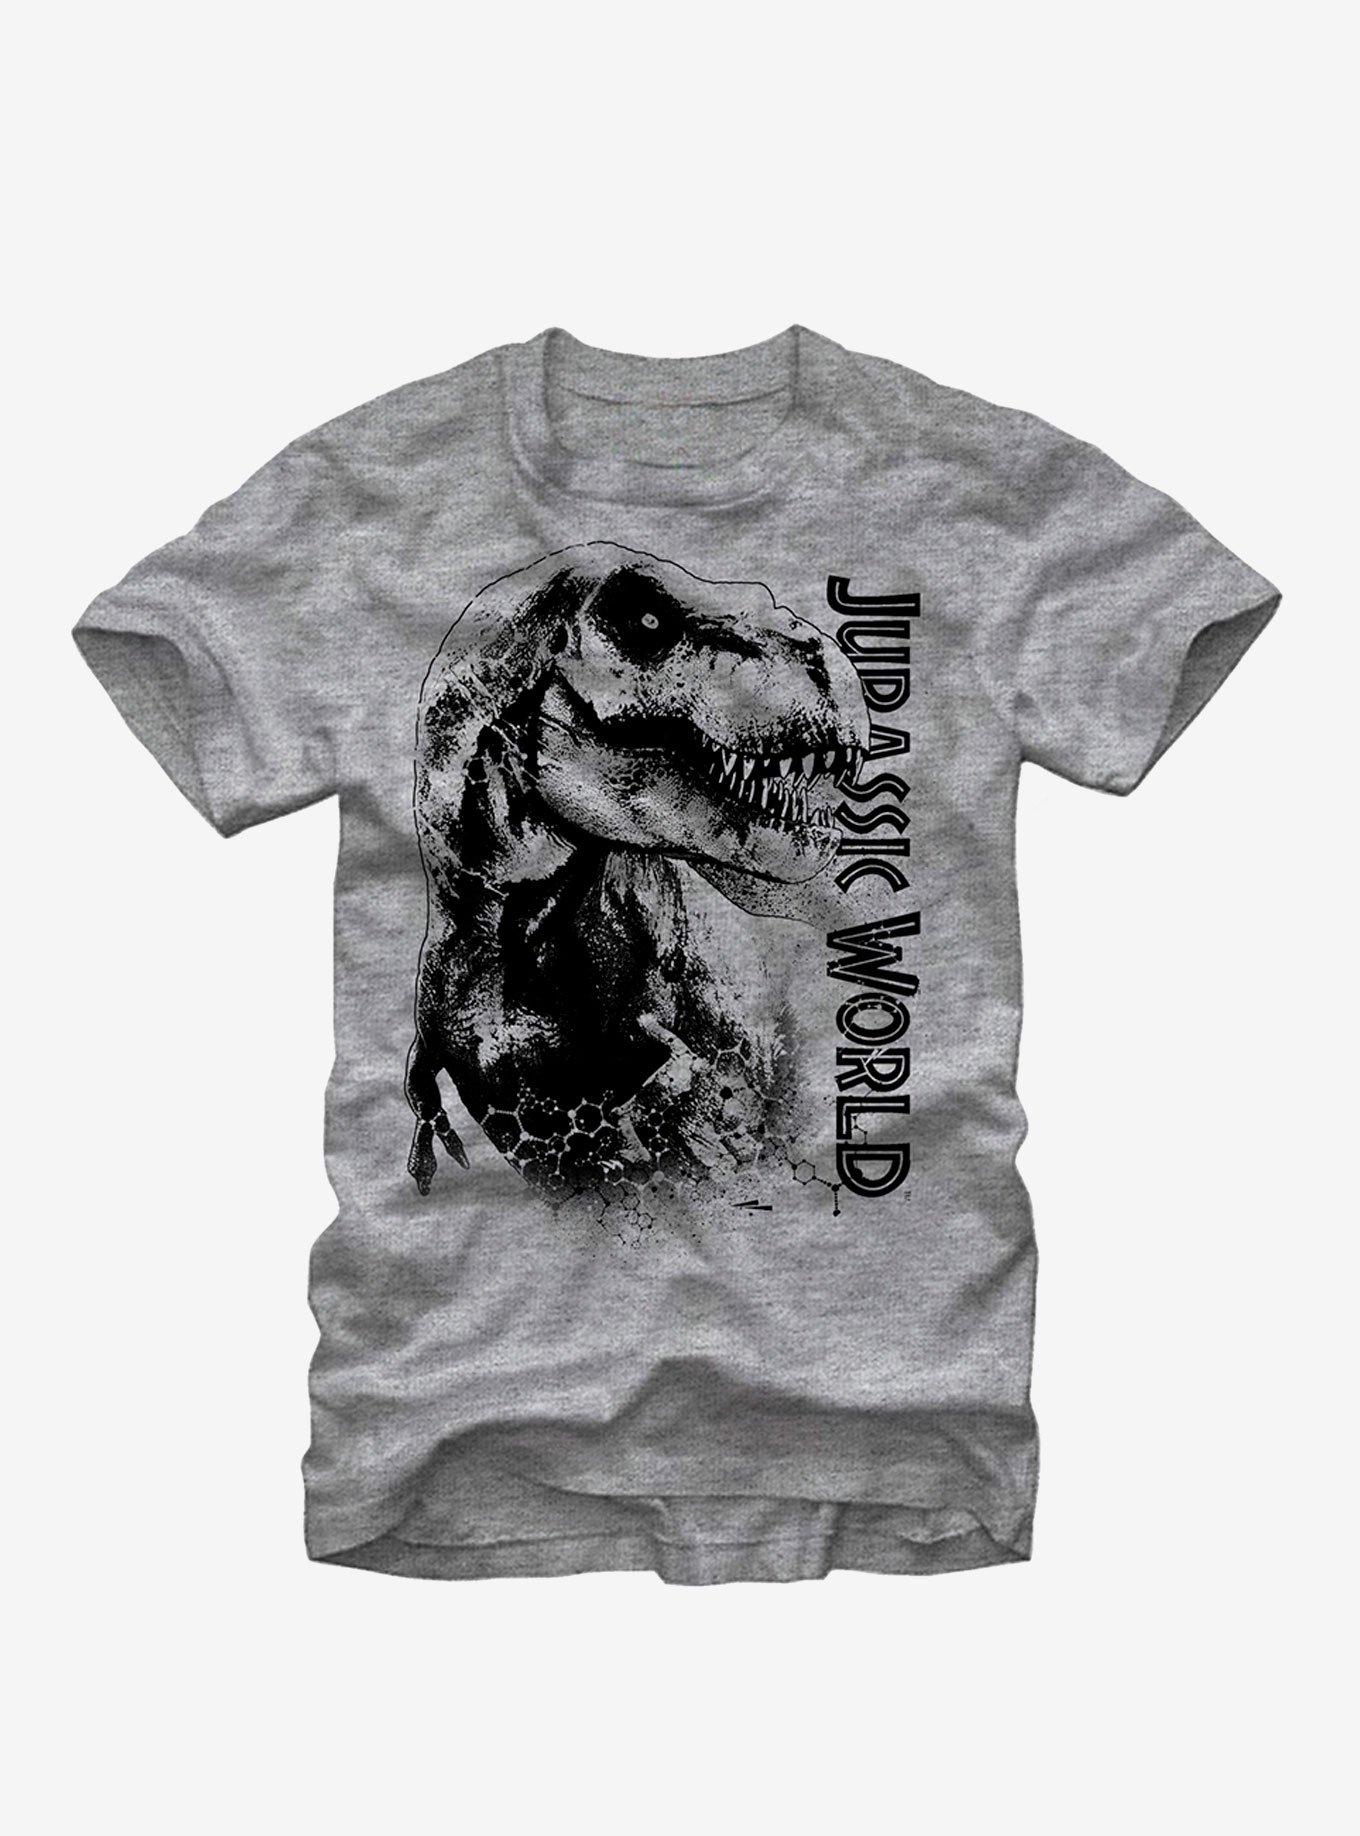 Jurassic Park T. Rex Carnivore T-Shirt, , hi-res